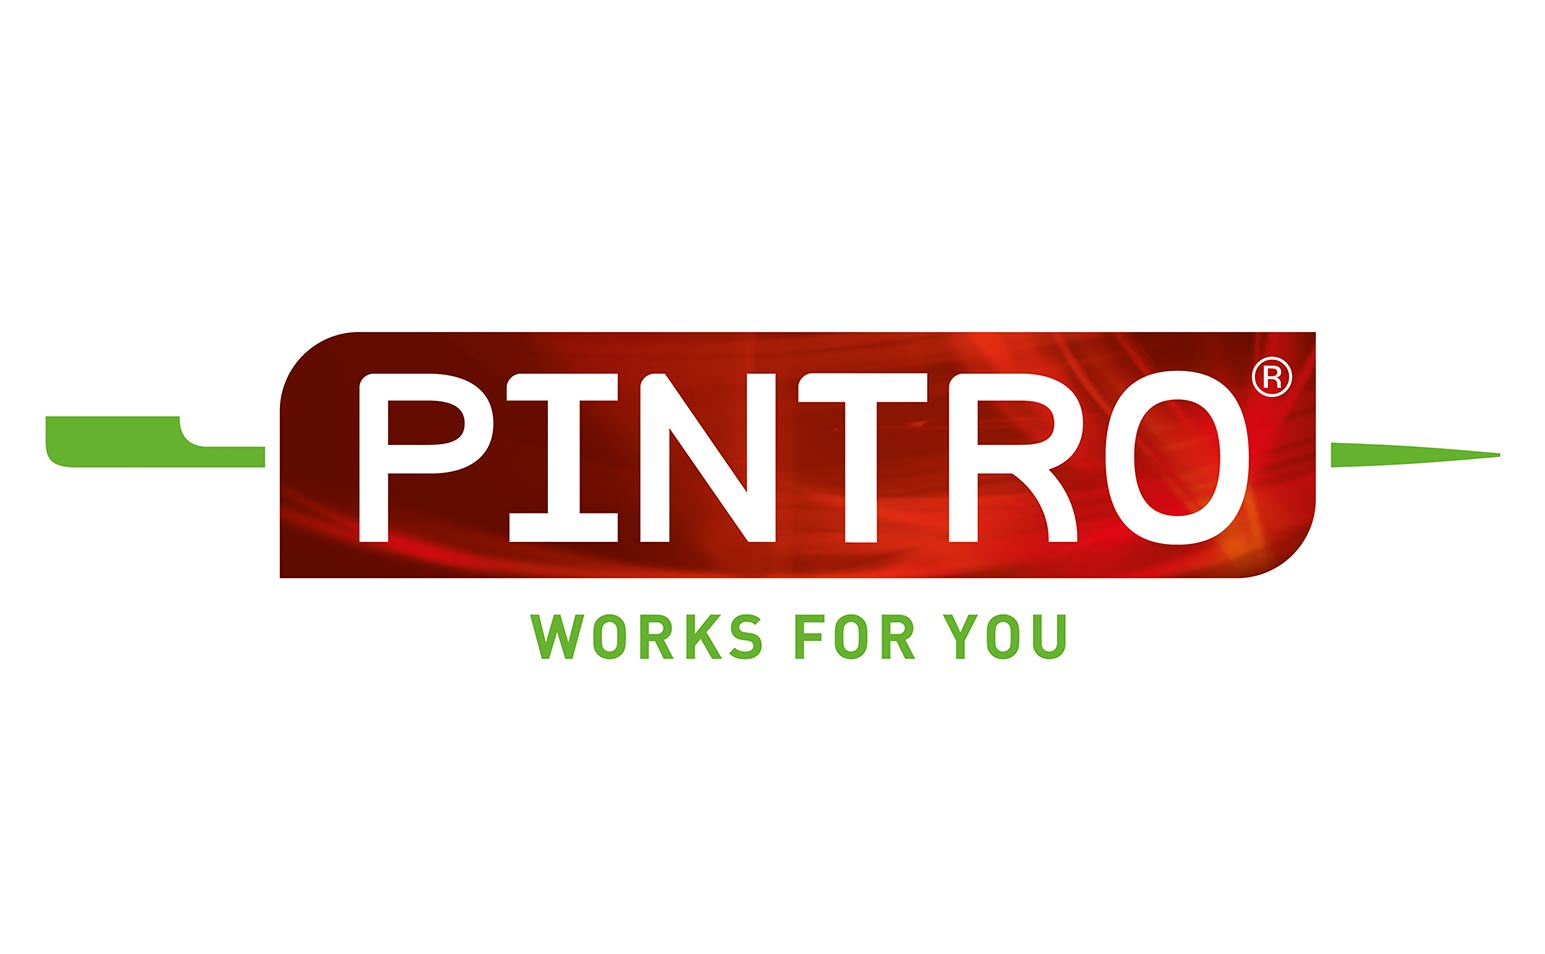 PINTRO machines Over PINTRO 1